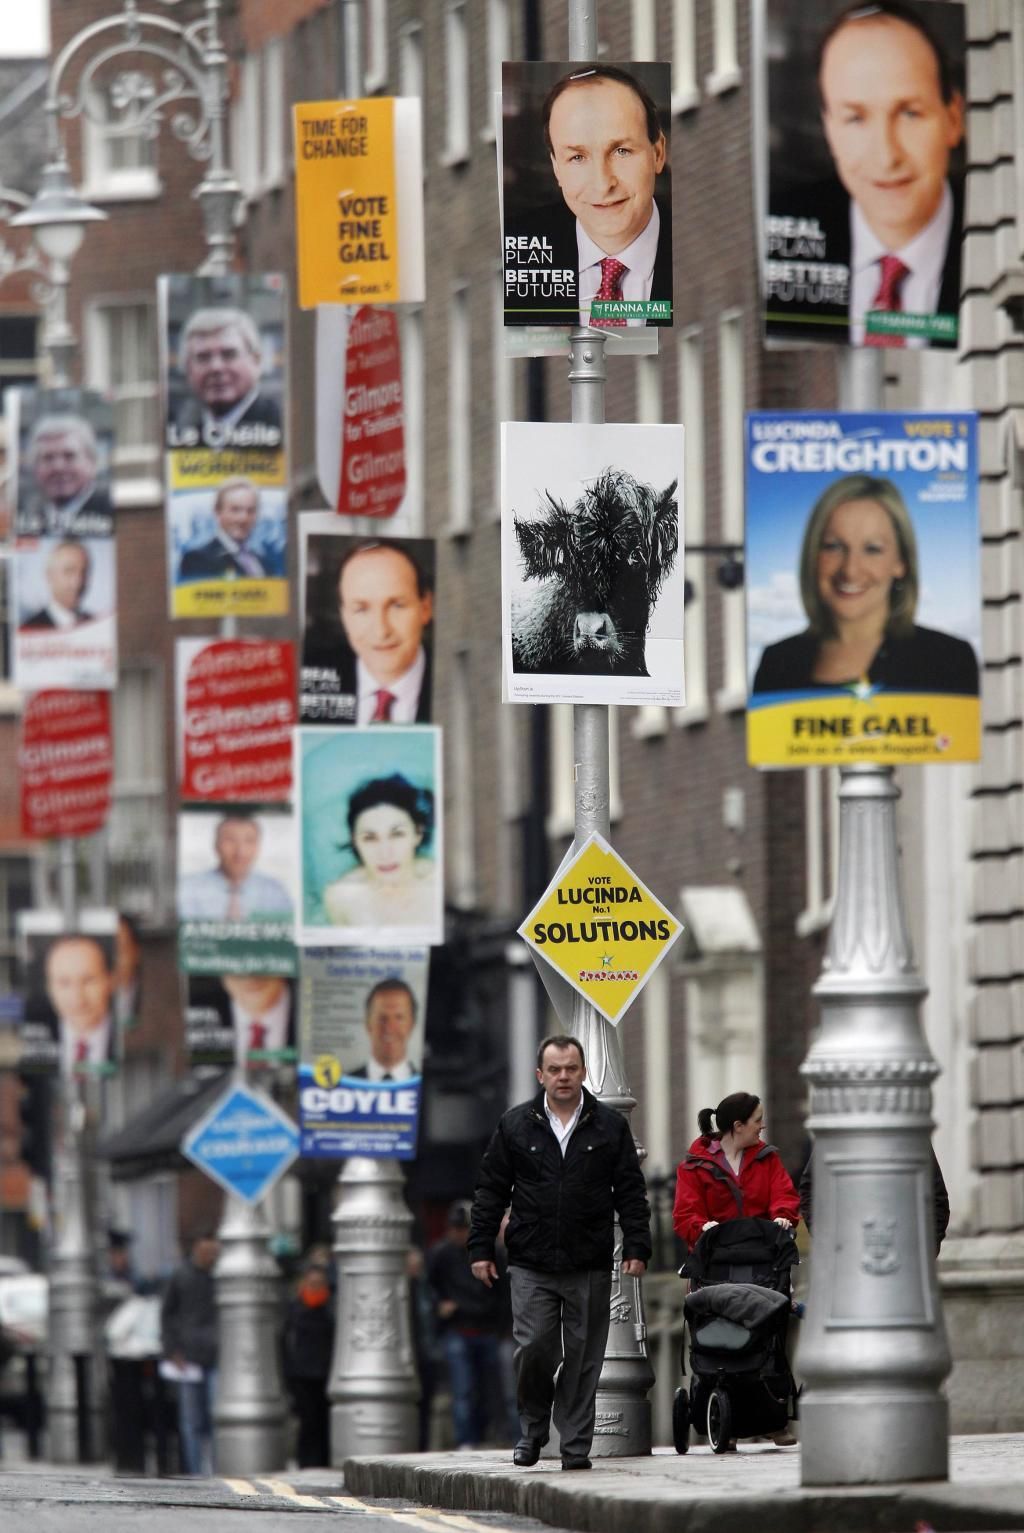 Irové půjdou 25. února k volbám (budou volit novou vládu)